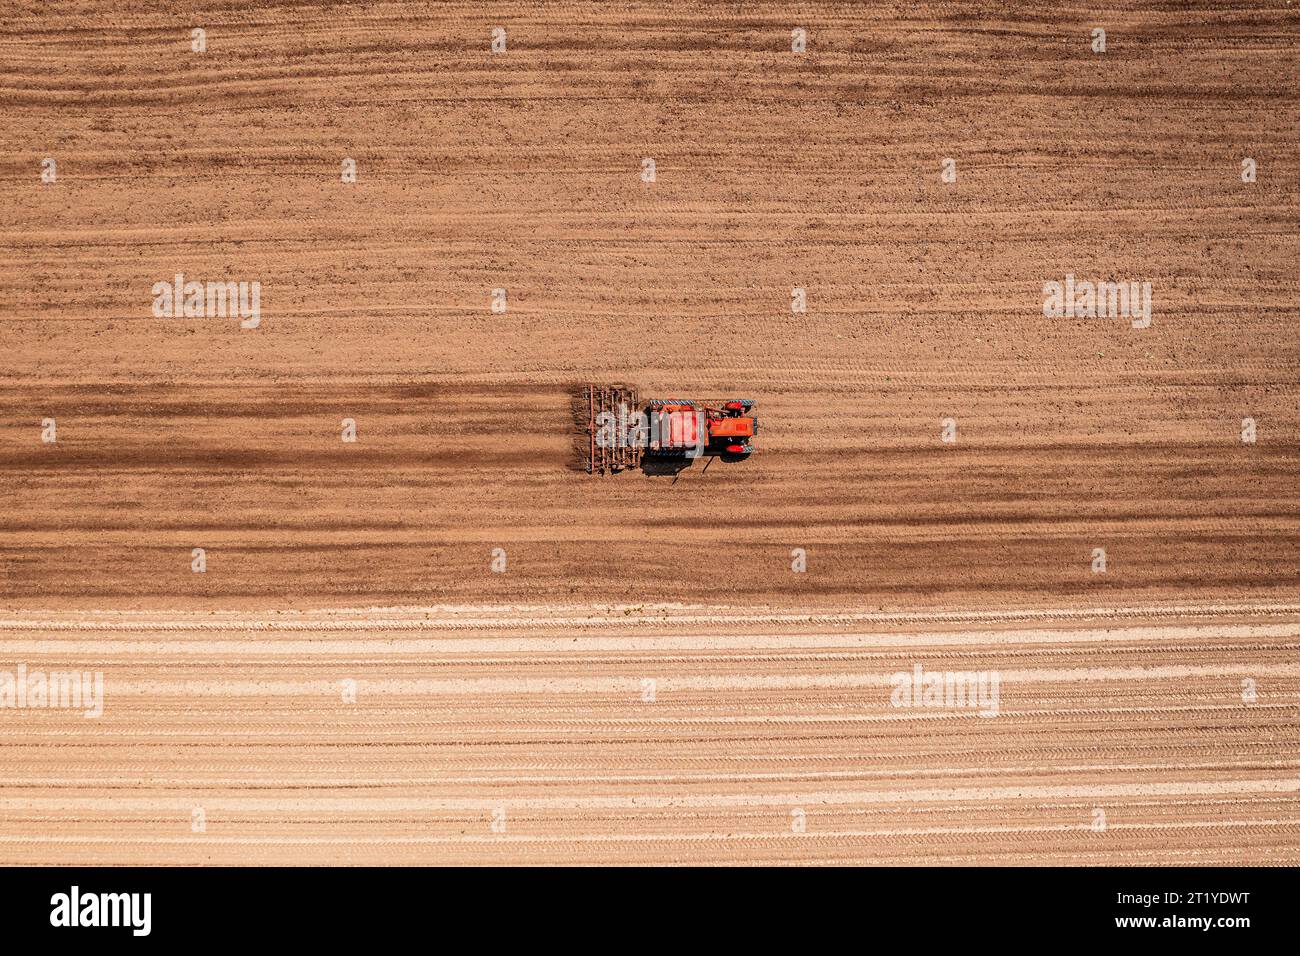 Roter landwirtschaftlicher Traktor mit angebauter Deichsel, der vor der Aussaat die Bodenbearbeitung durchführt, Luftaufnahme vom Drohnen-pov von oben nach unten Stockfoto